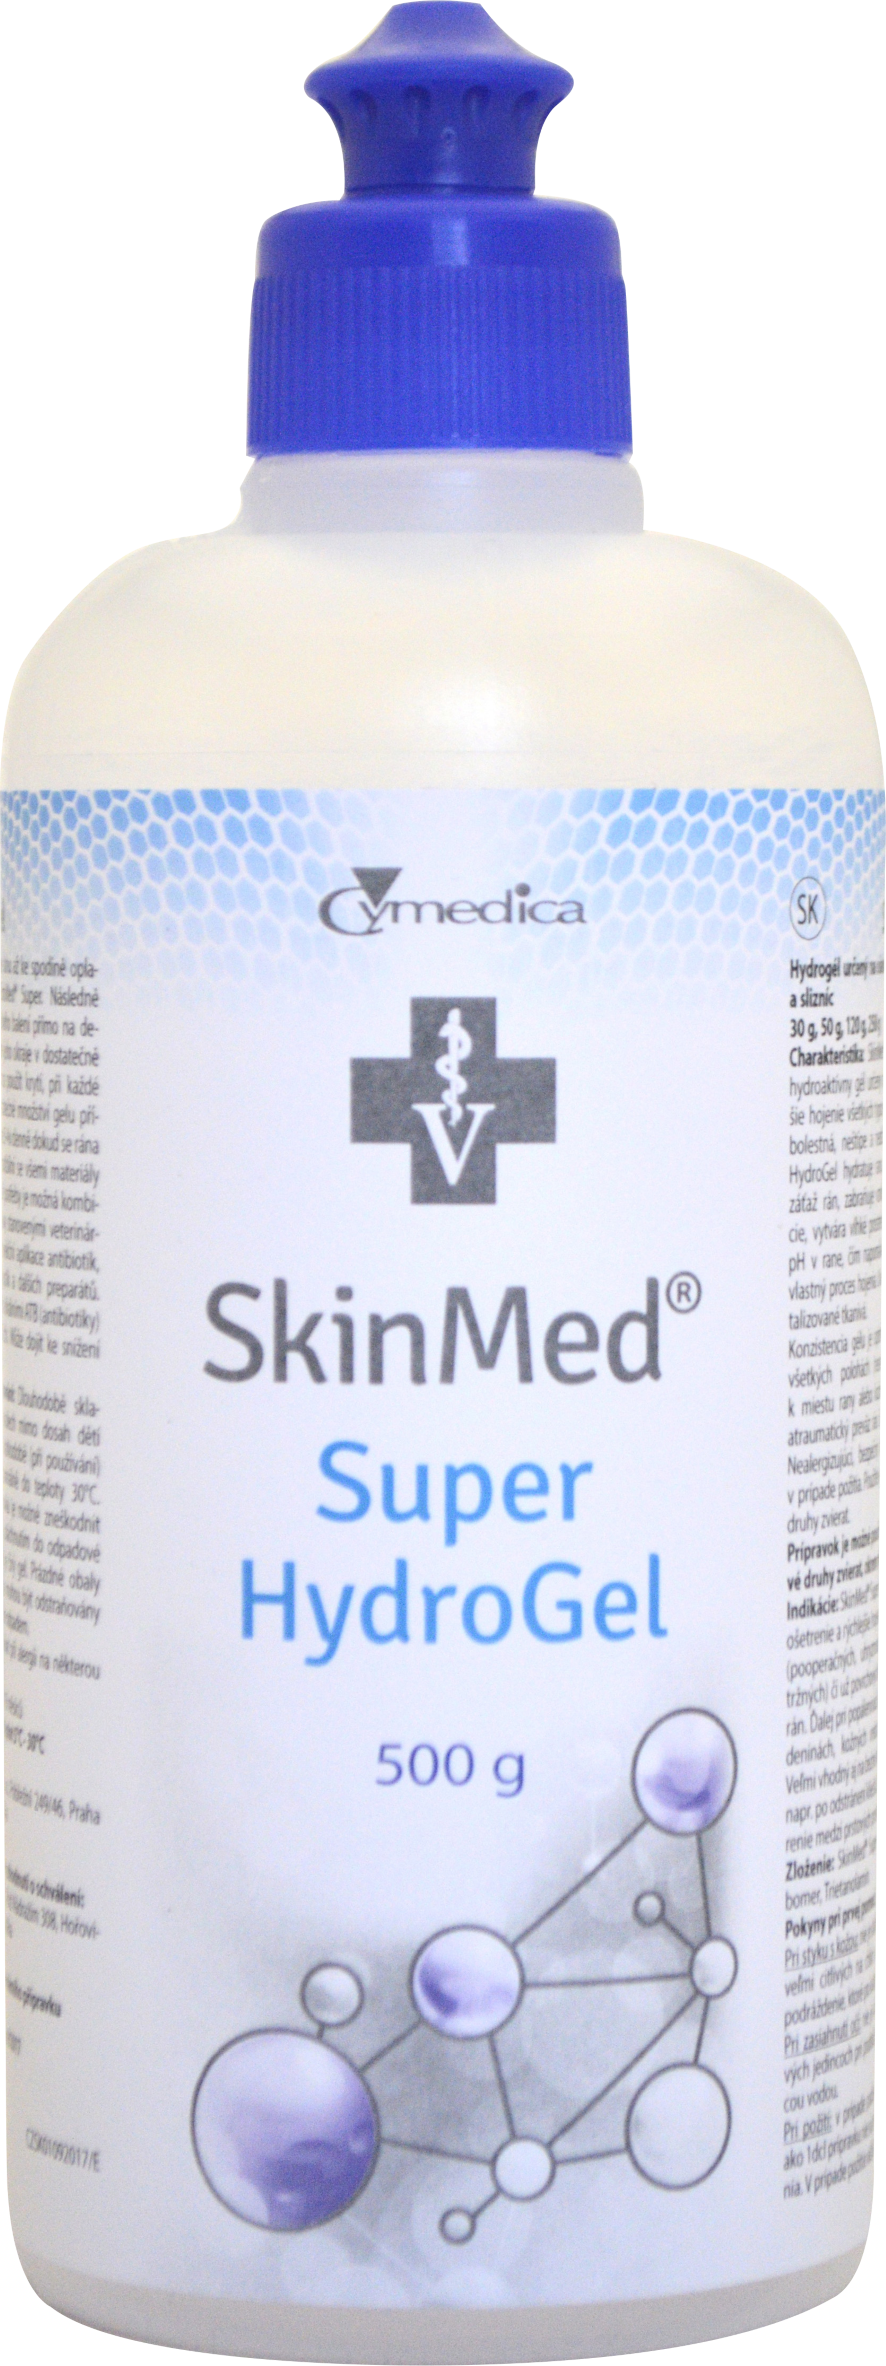 SkinMed Super HydroGel 500 g